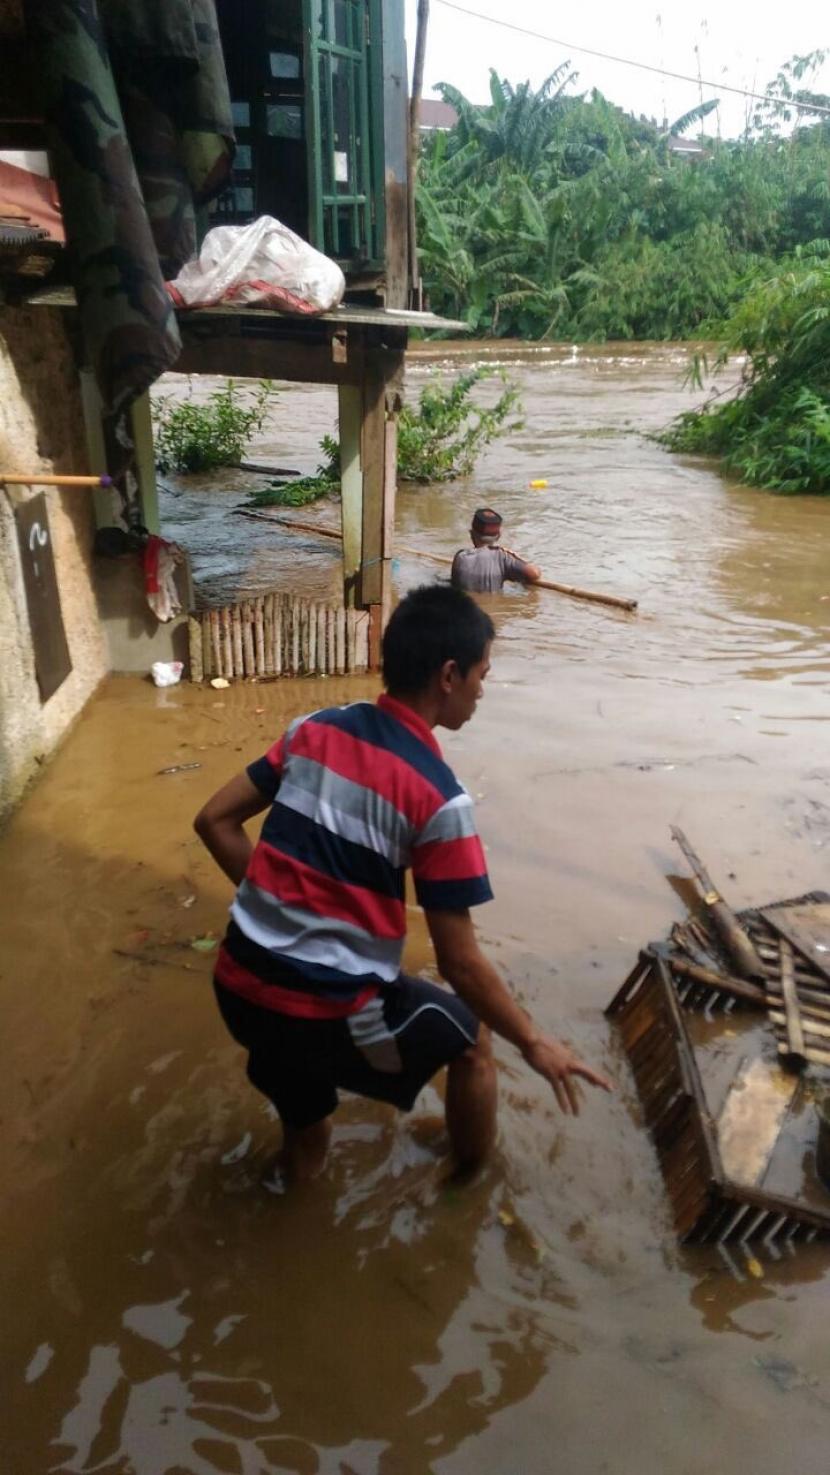 Banjir melanda kawasan Tanjung Barat, Kecamatan Jagakarsa, Jakarta Selatan, akibat luapan Sungai Ciliwung.